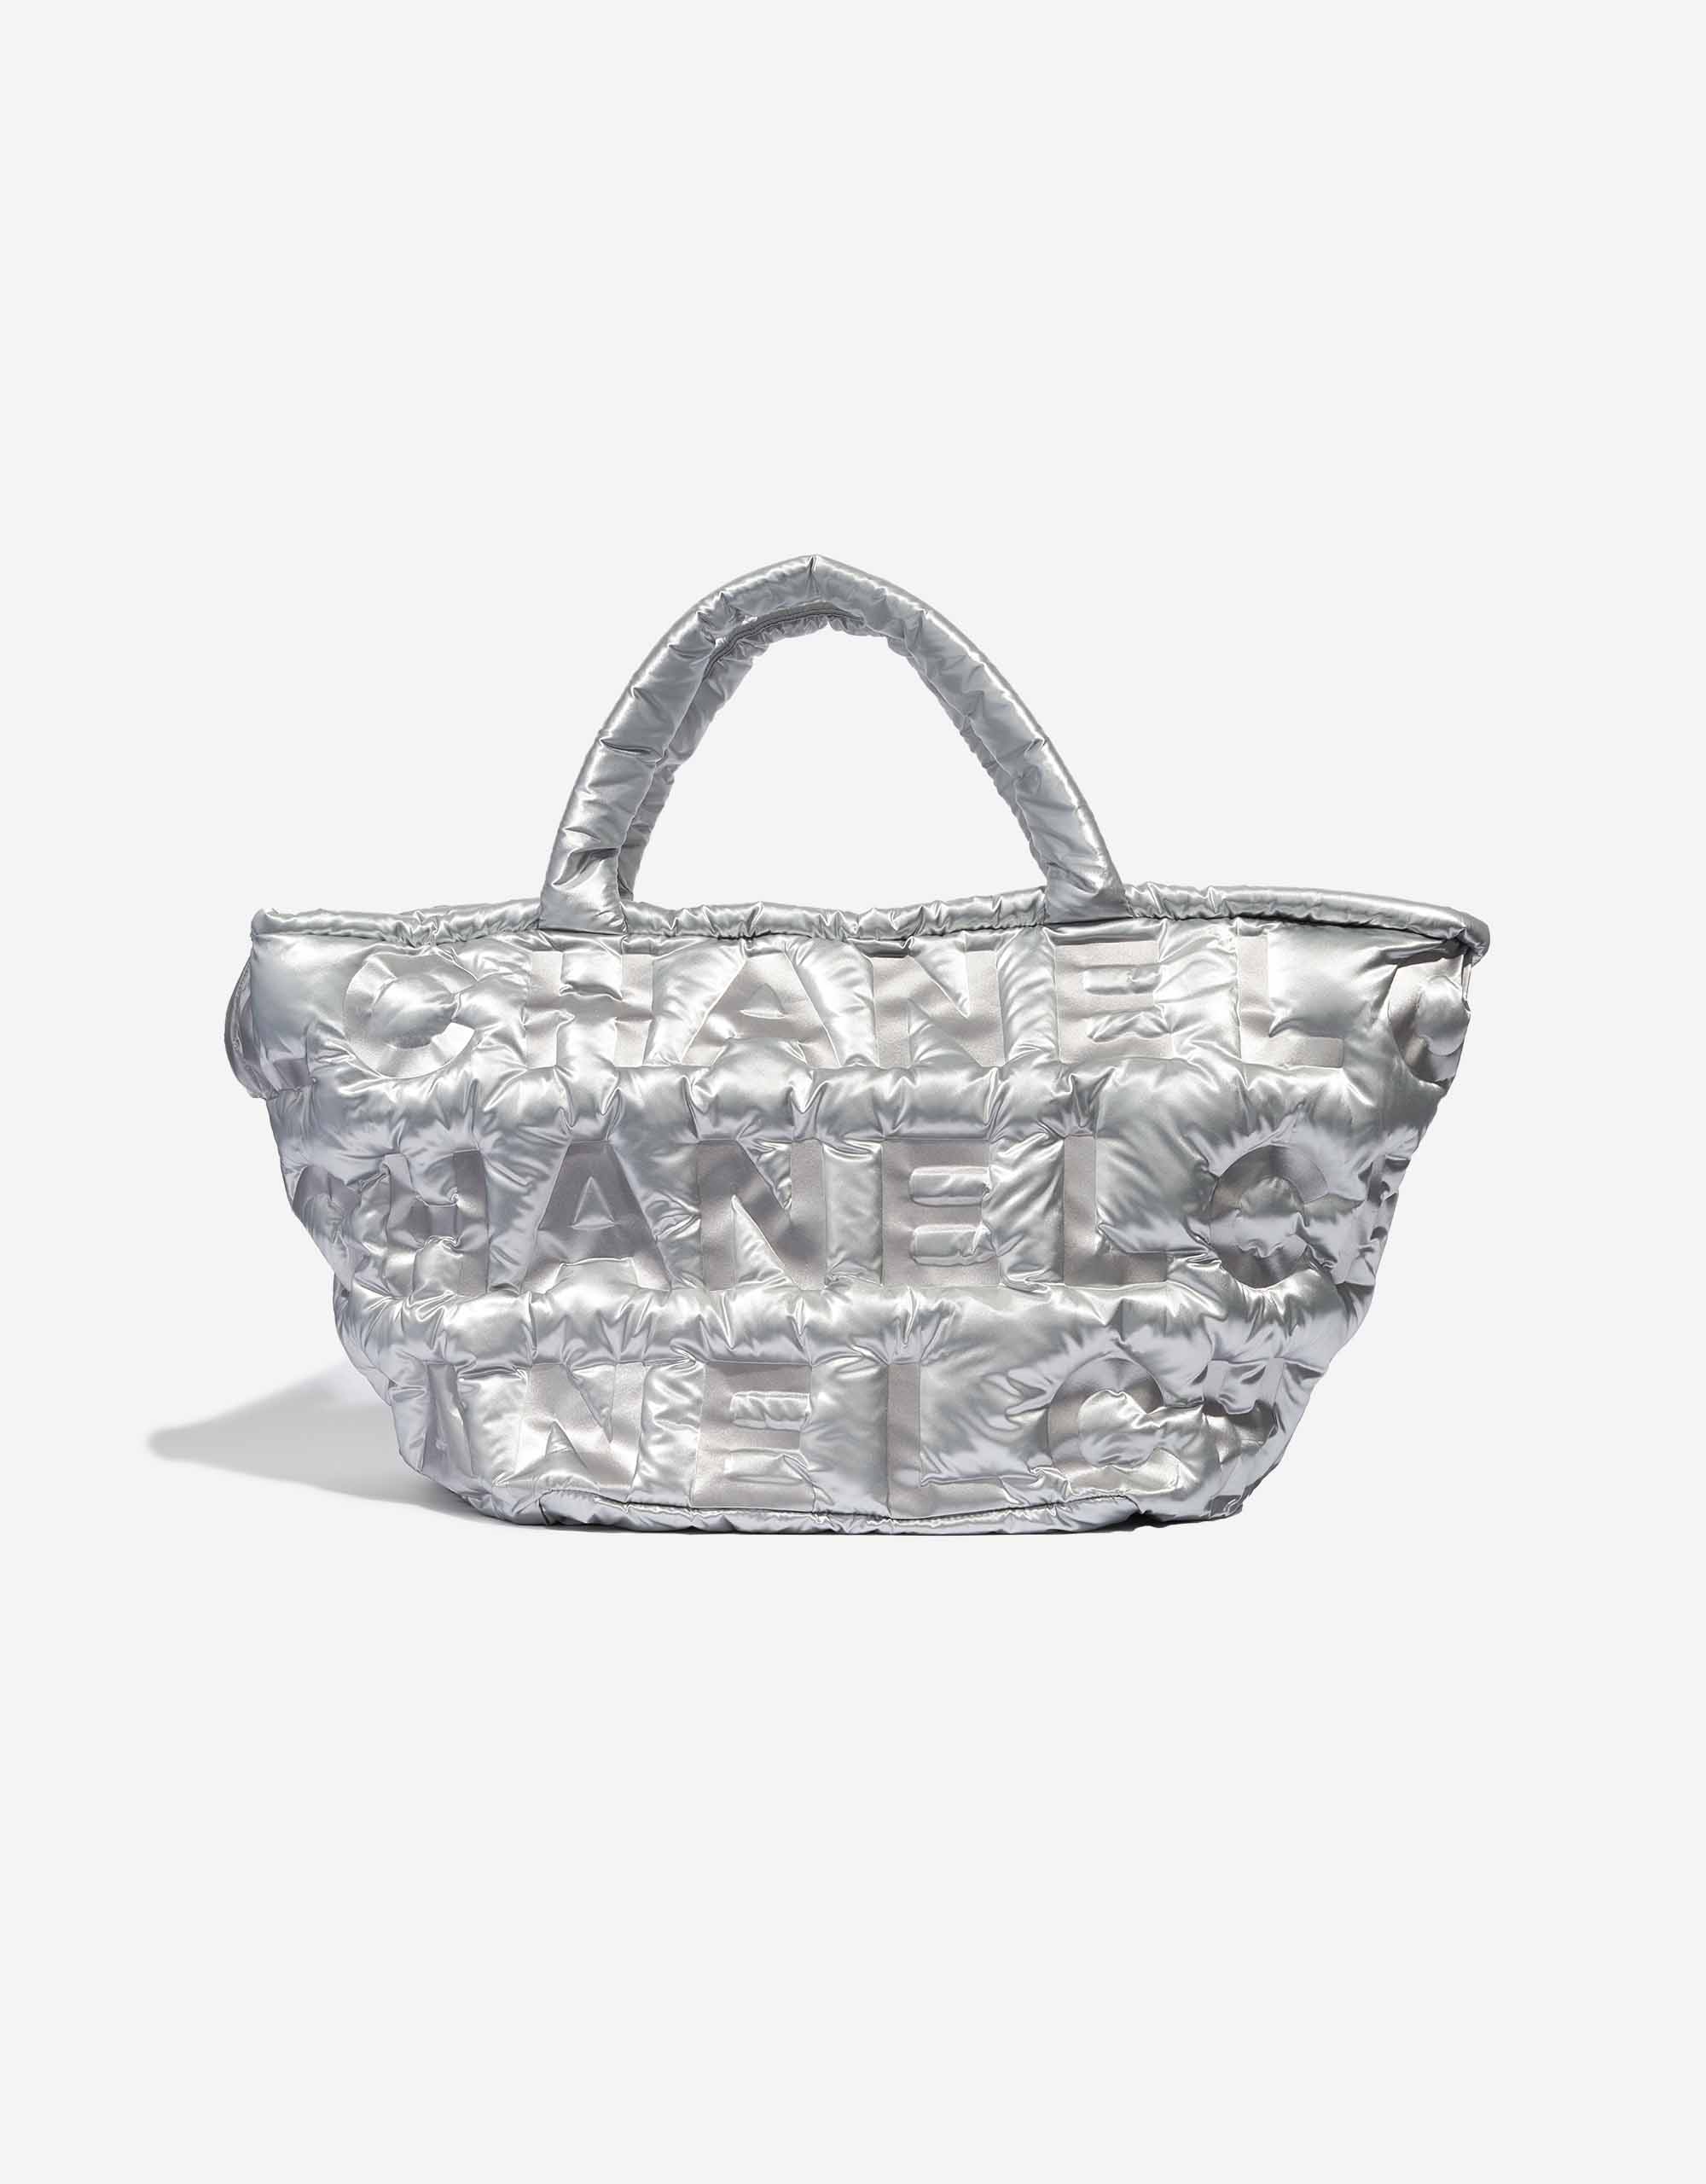 Chanel Large Shopper Nylon Bag Silver